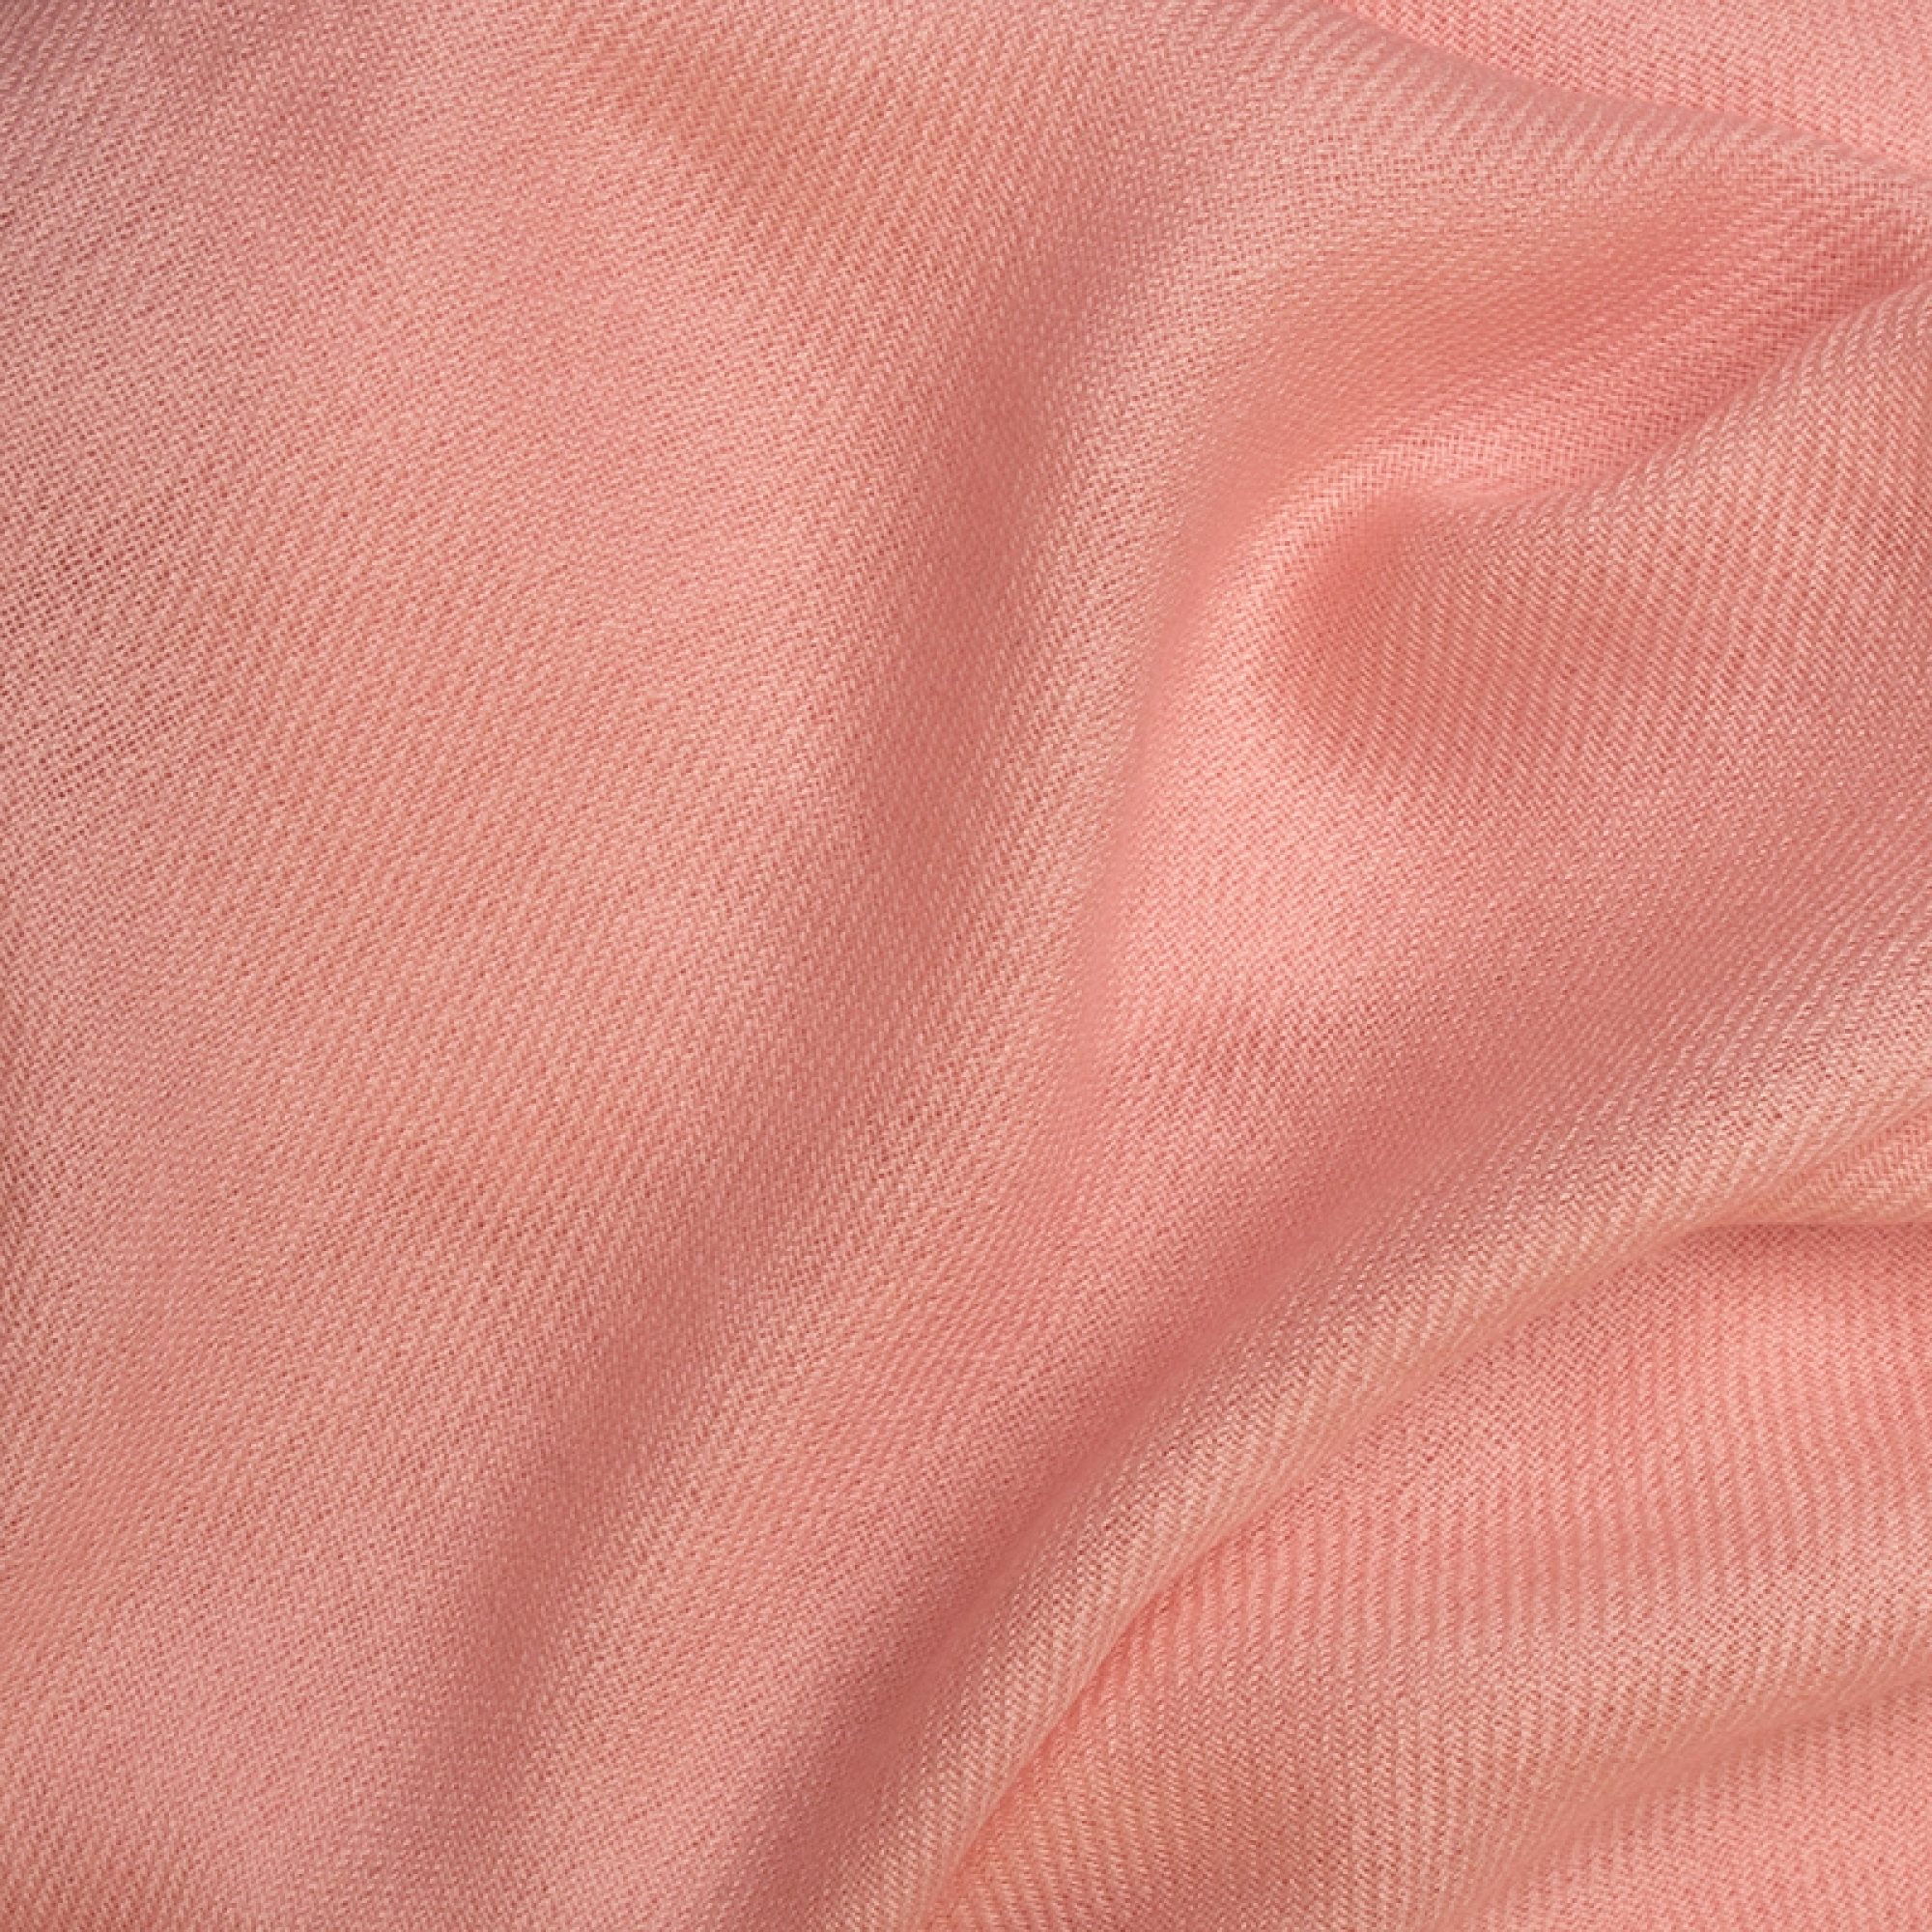 Cashmere accessori plaid frisbi 147 x 203 rosa crema 147 x 203 cm